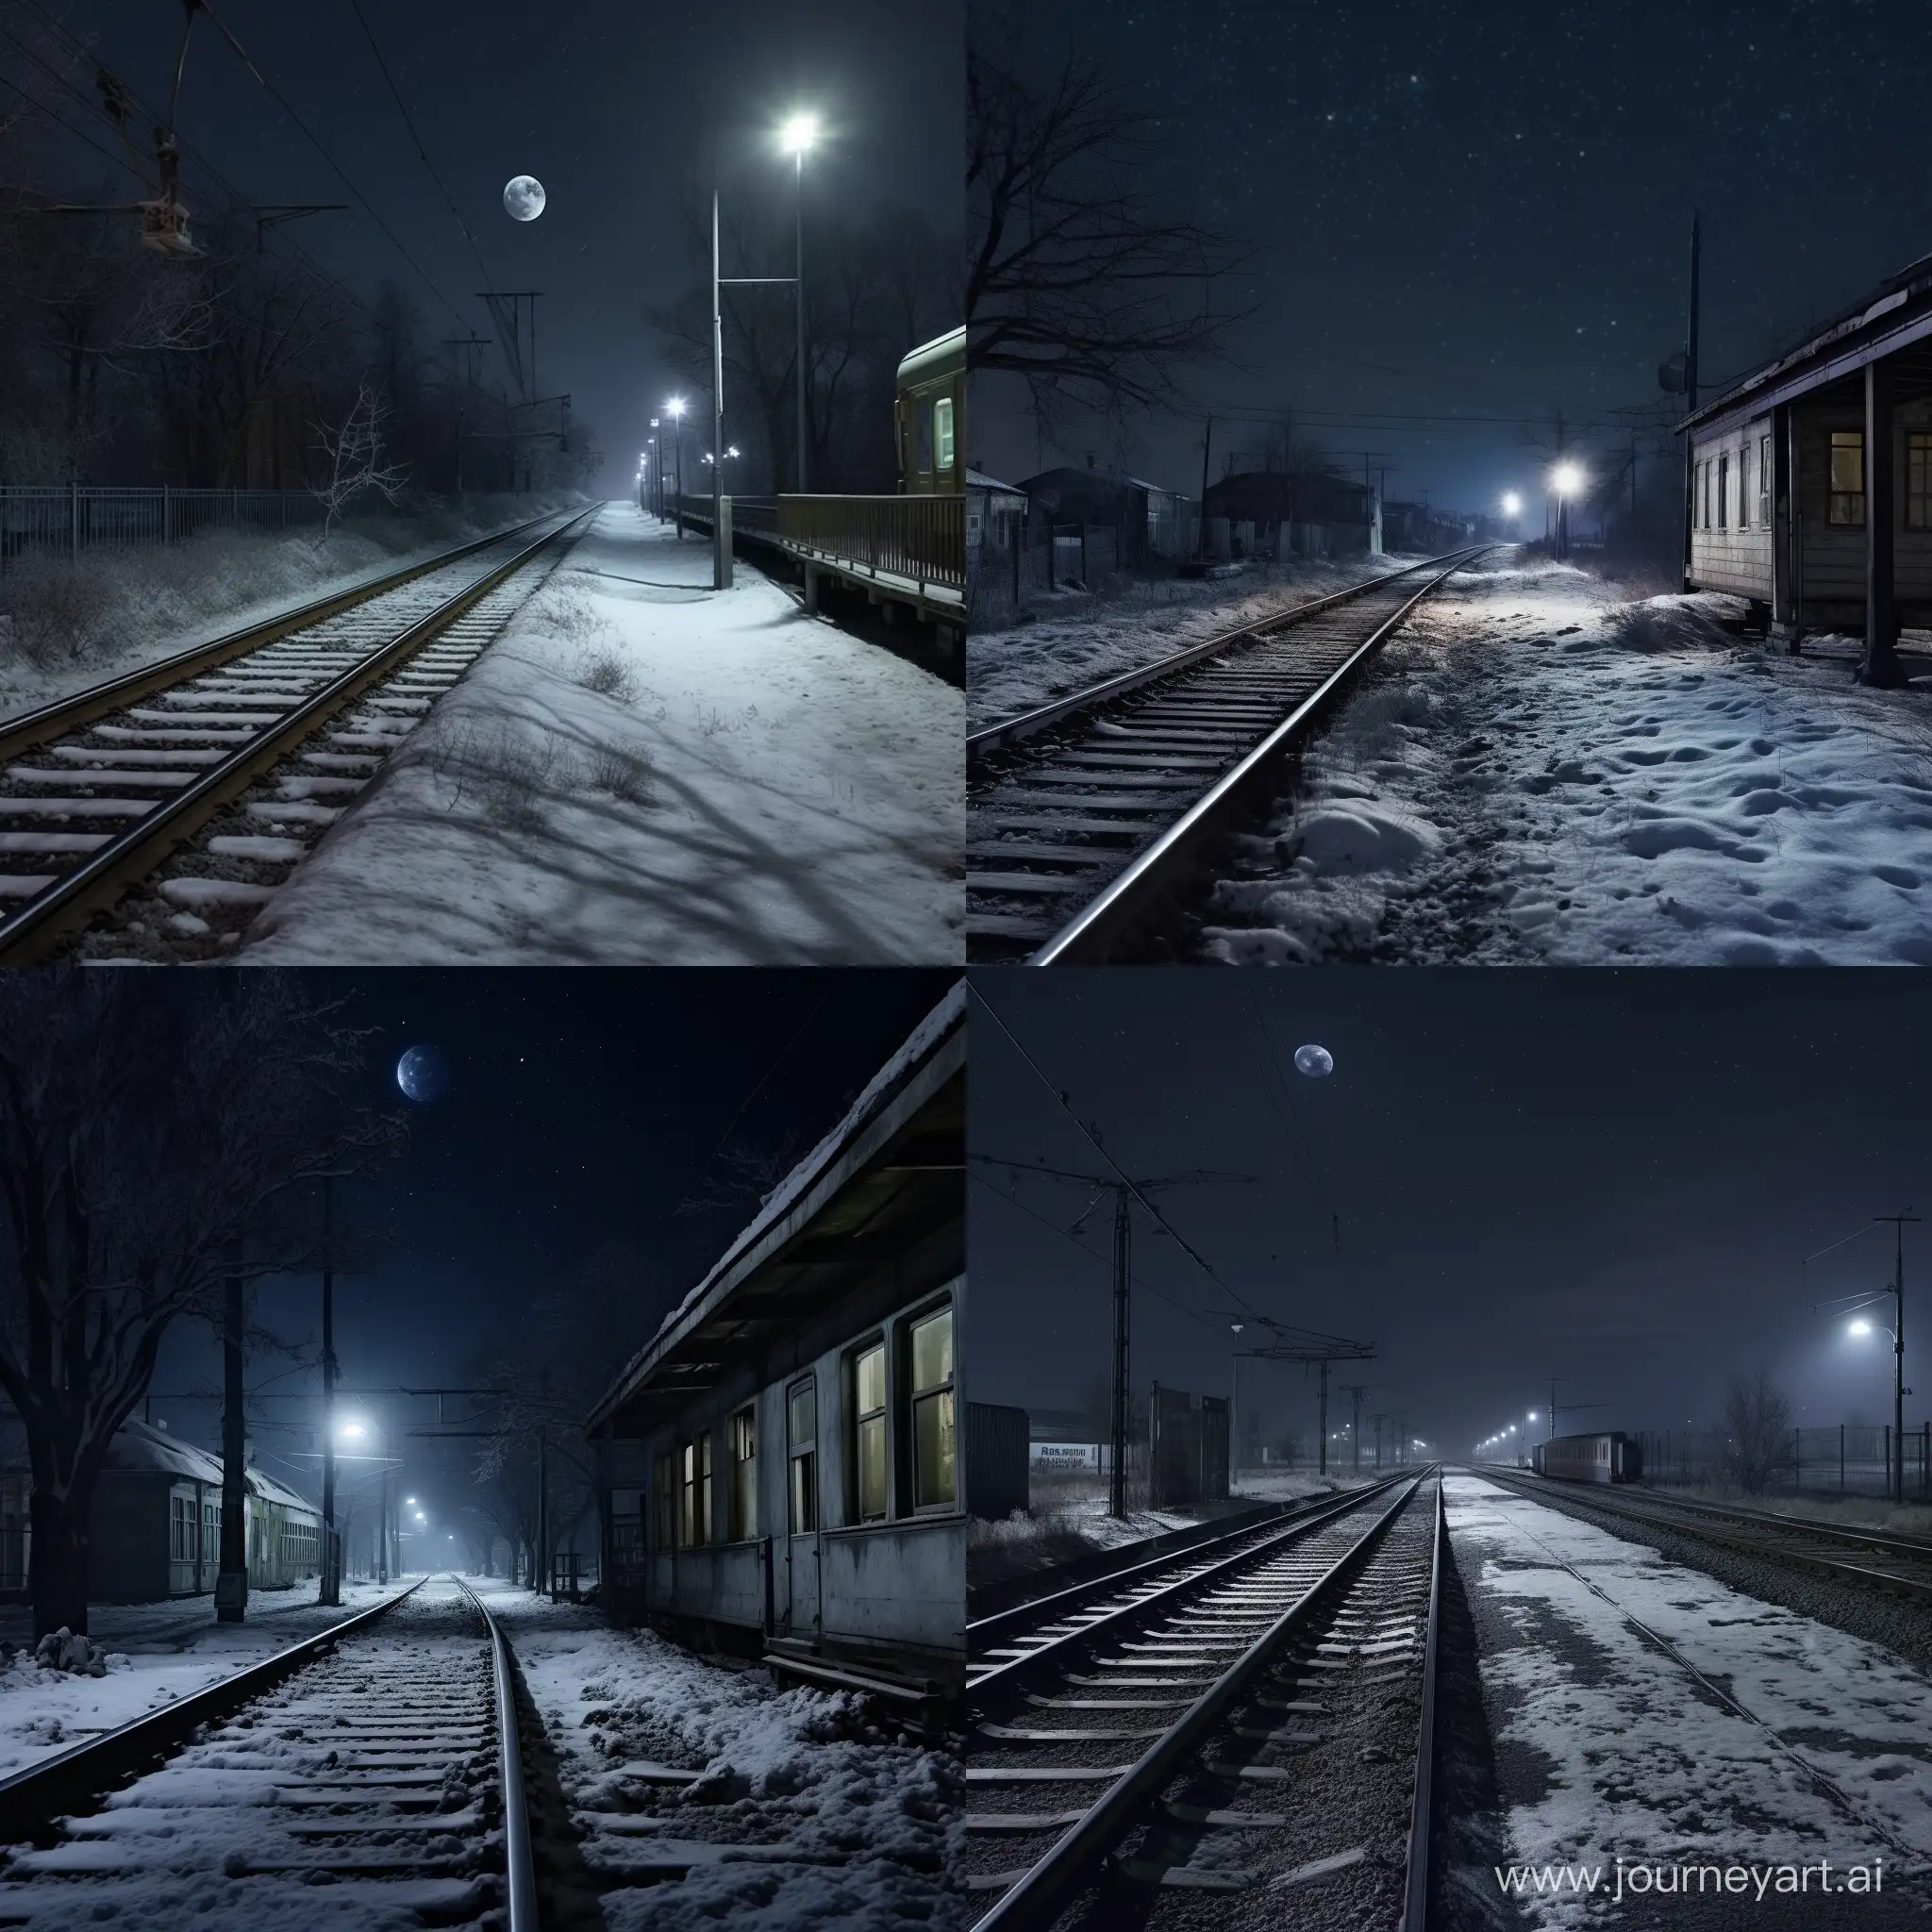 Безлюдная ,в полумраке, железнодорожная платформа, запорошенная снегом, ночью в мороз, в Российской глубинке, далеко от больших городов, фотография, гиперреализм, высокое разрешение